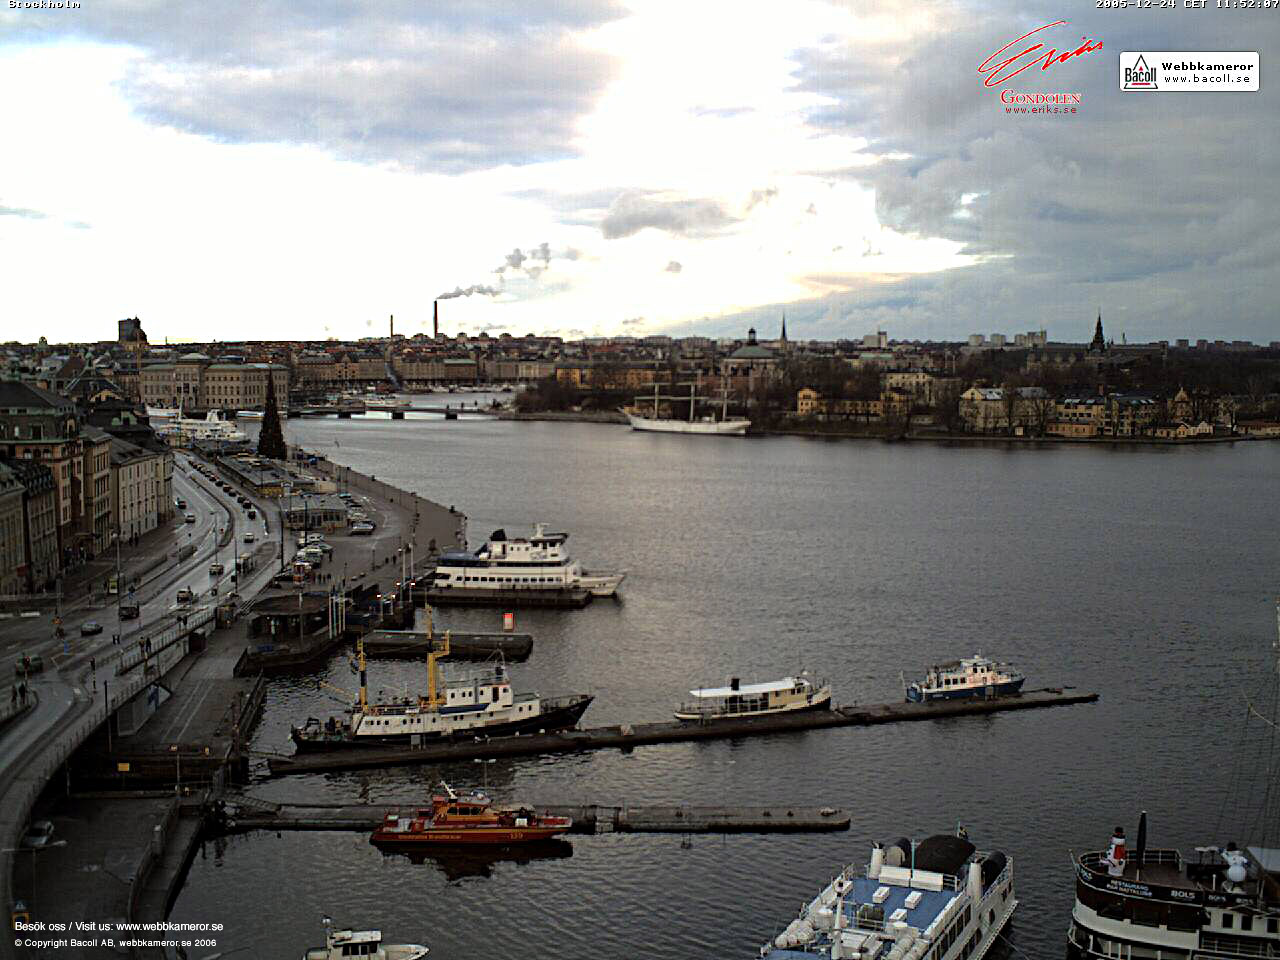 Webbkameror, Stockholm, webcam, väder, weather